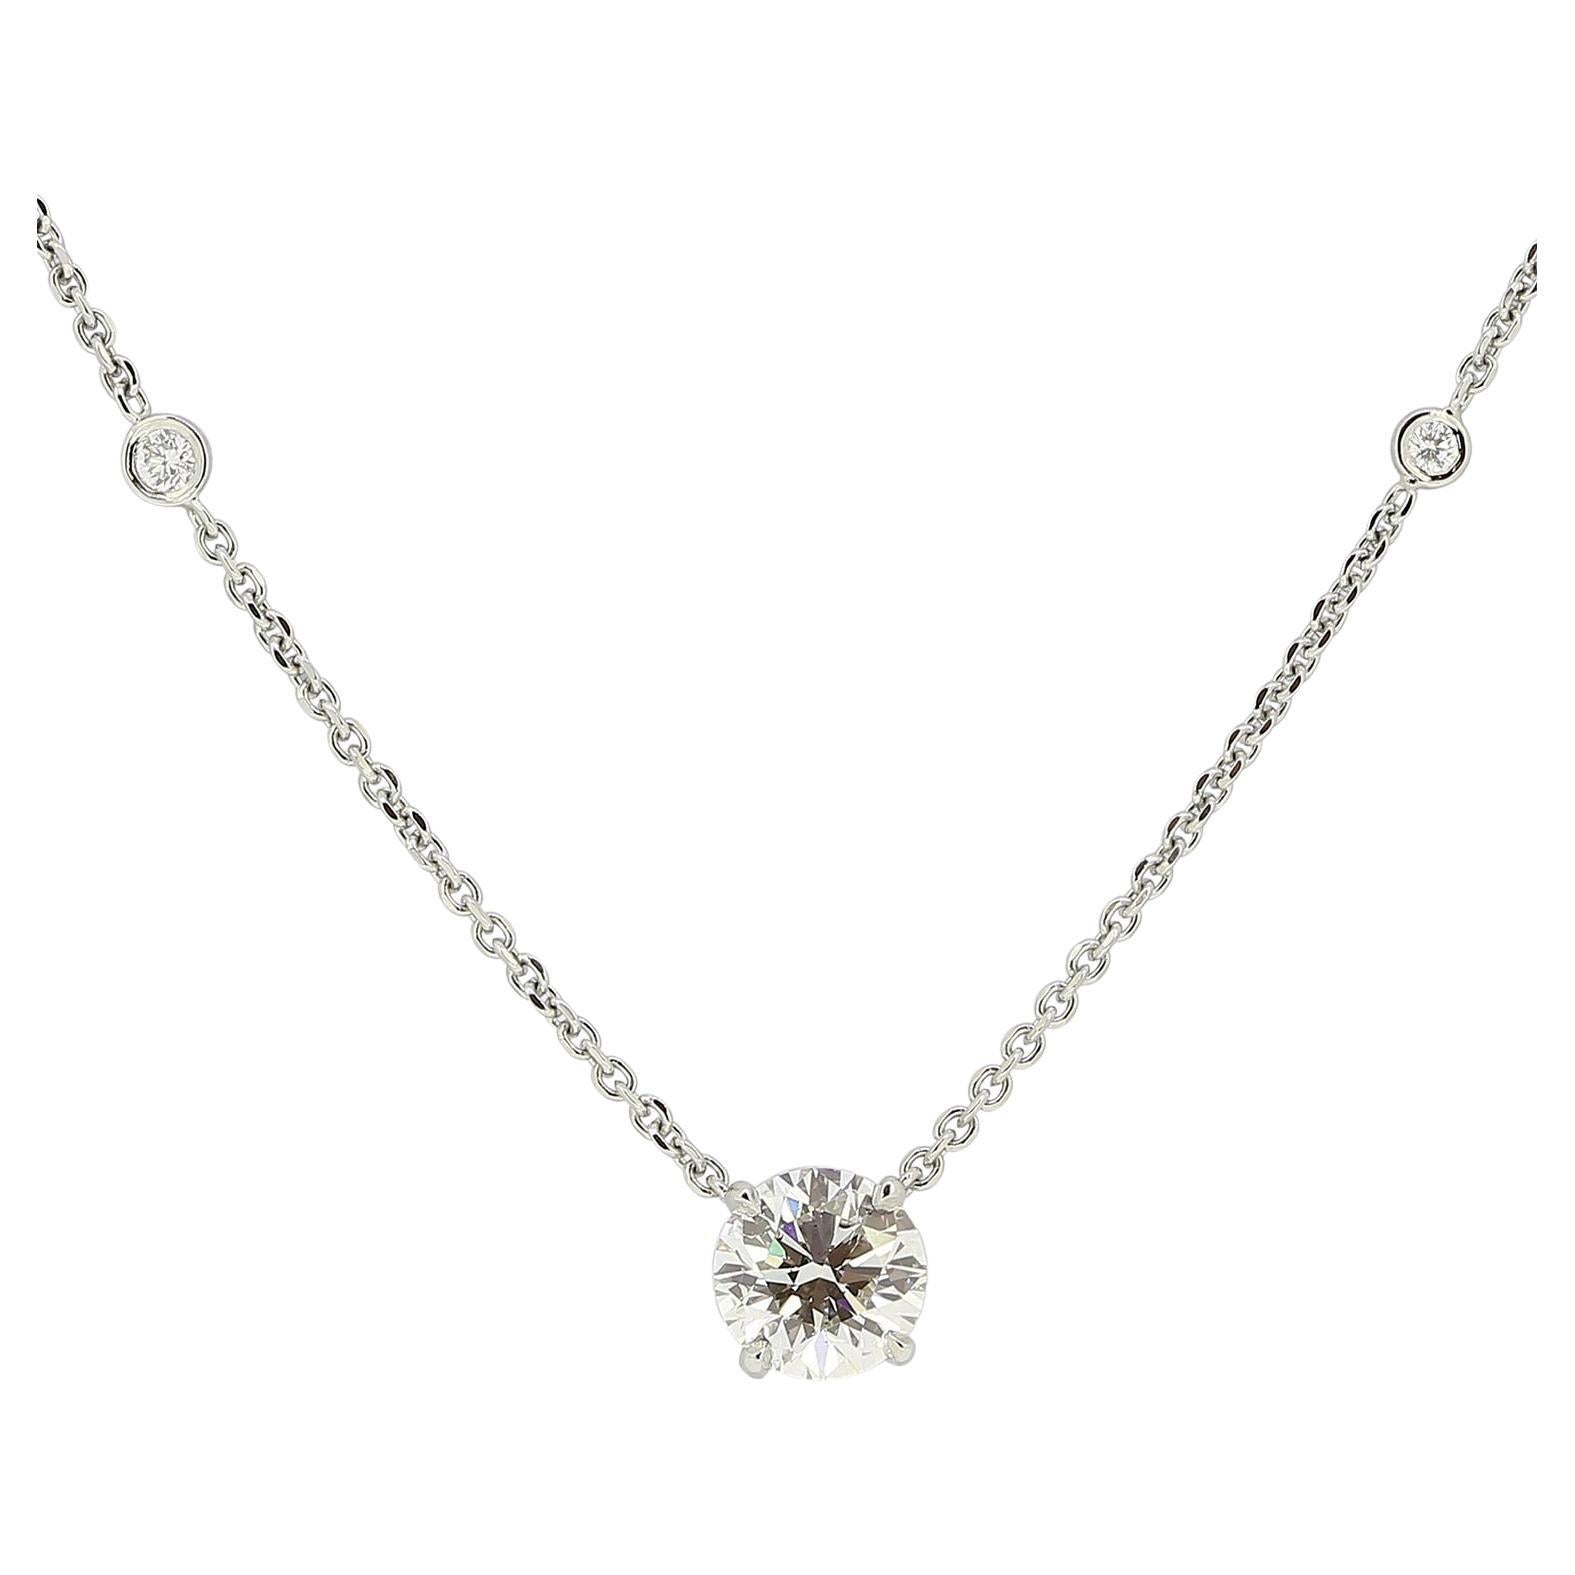 Boodles 1.70 Carat Diamond Necklace For Sale